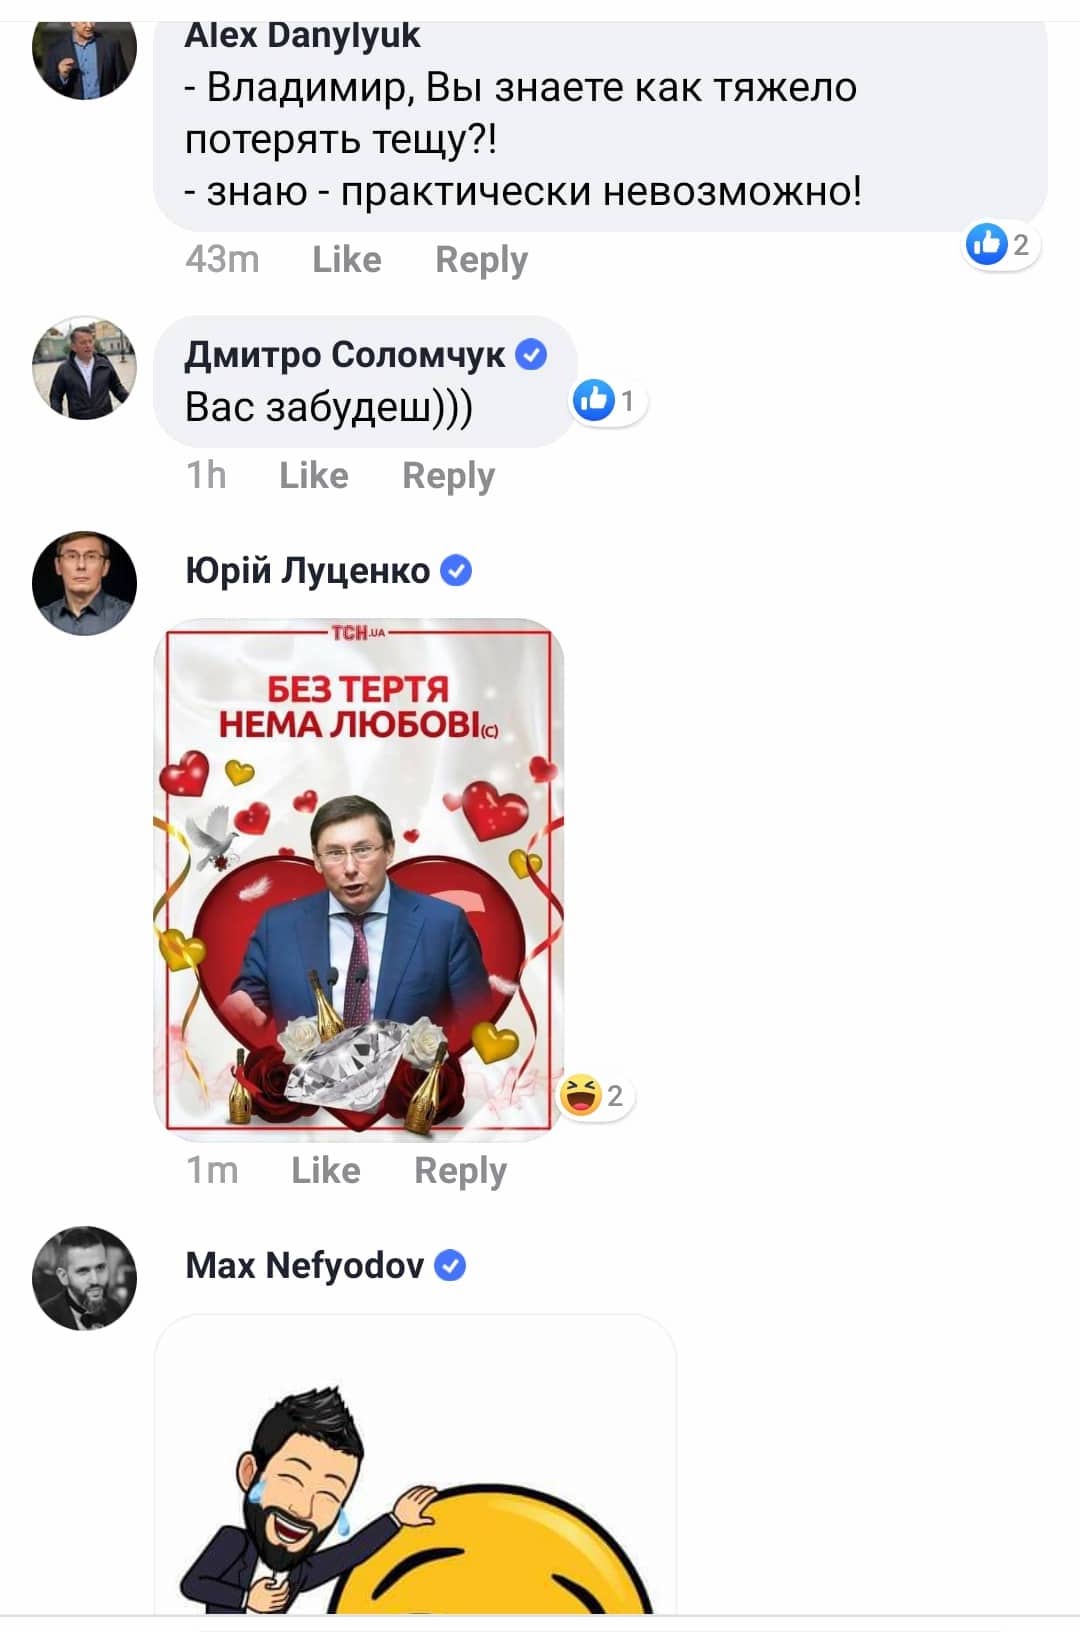 Богдан запостил валентинку в ФБ. Тимошенко написал, что скучает